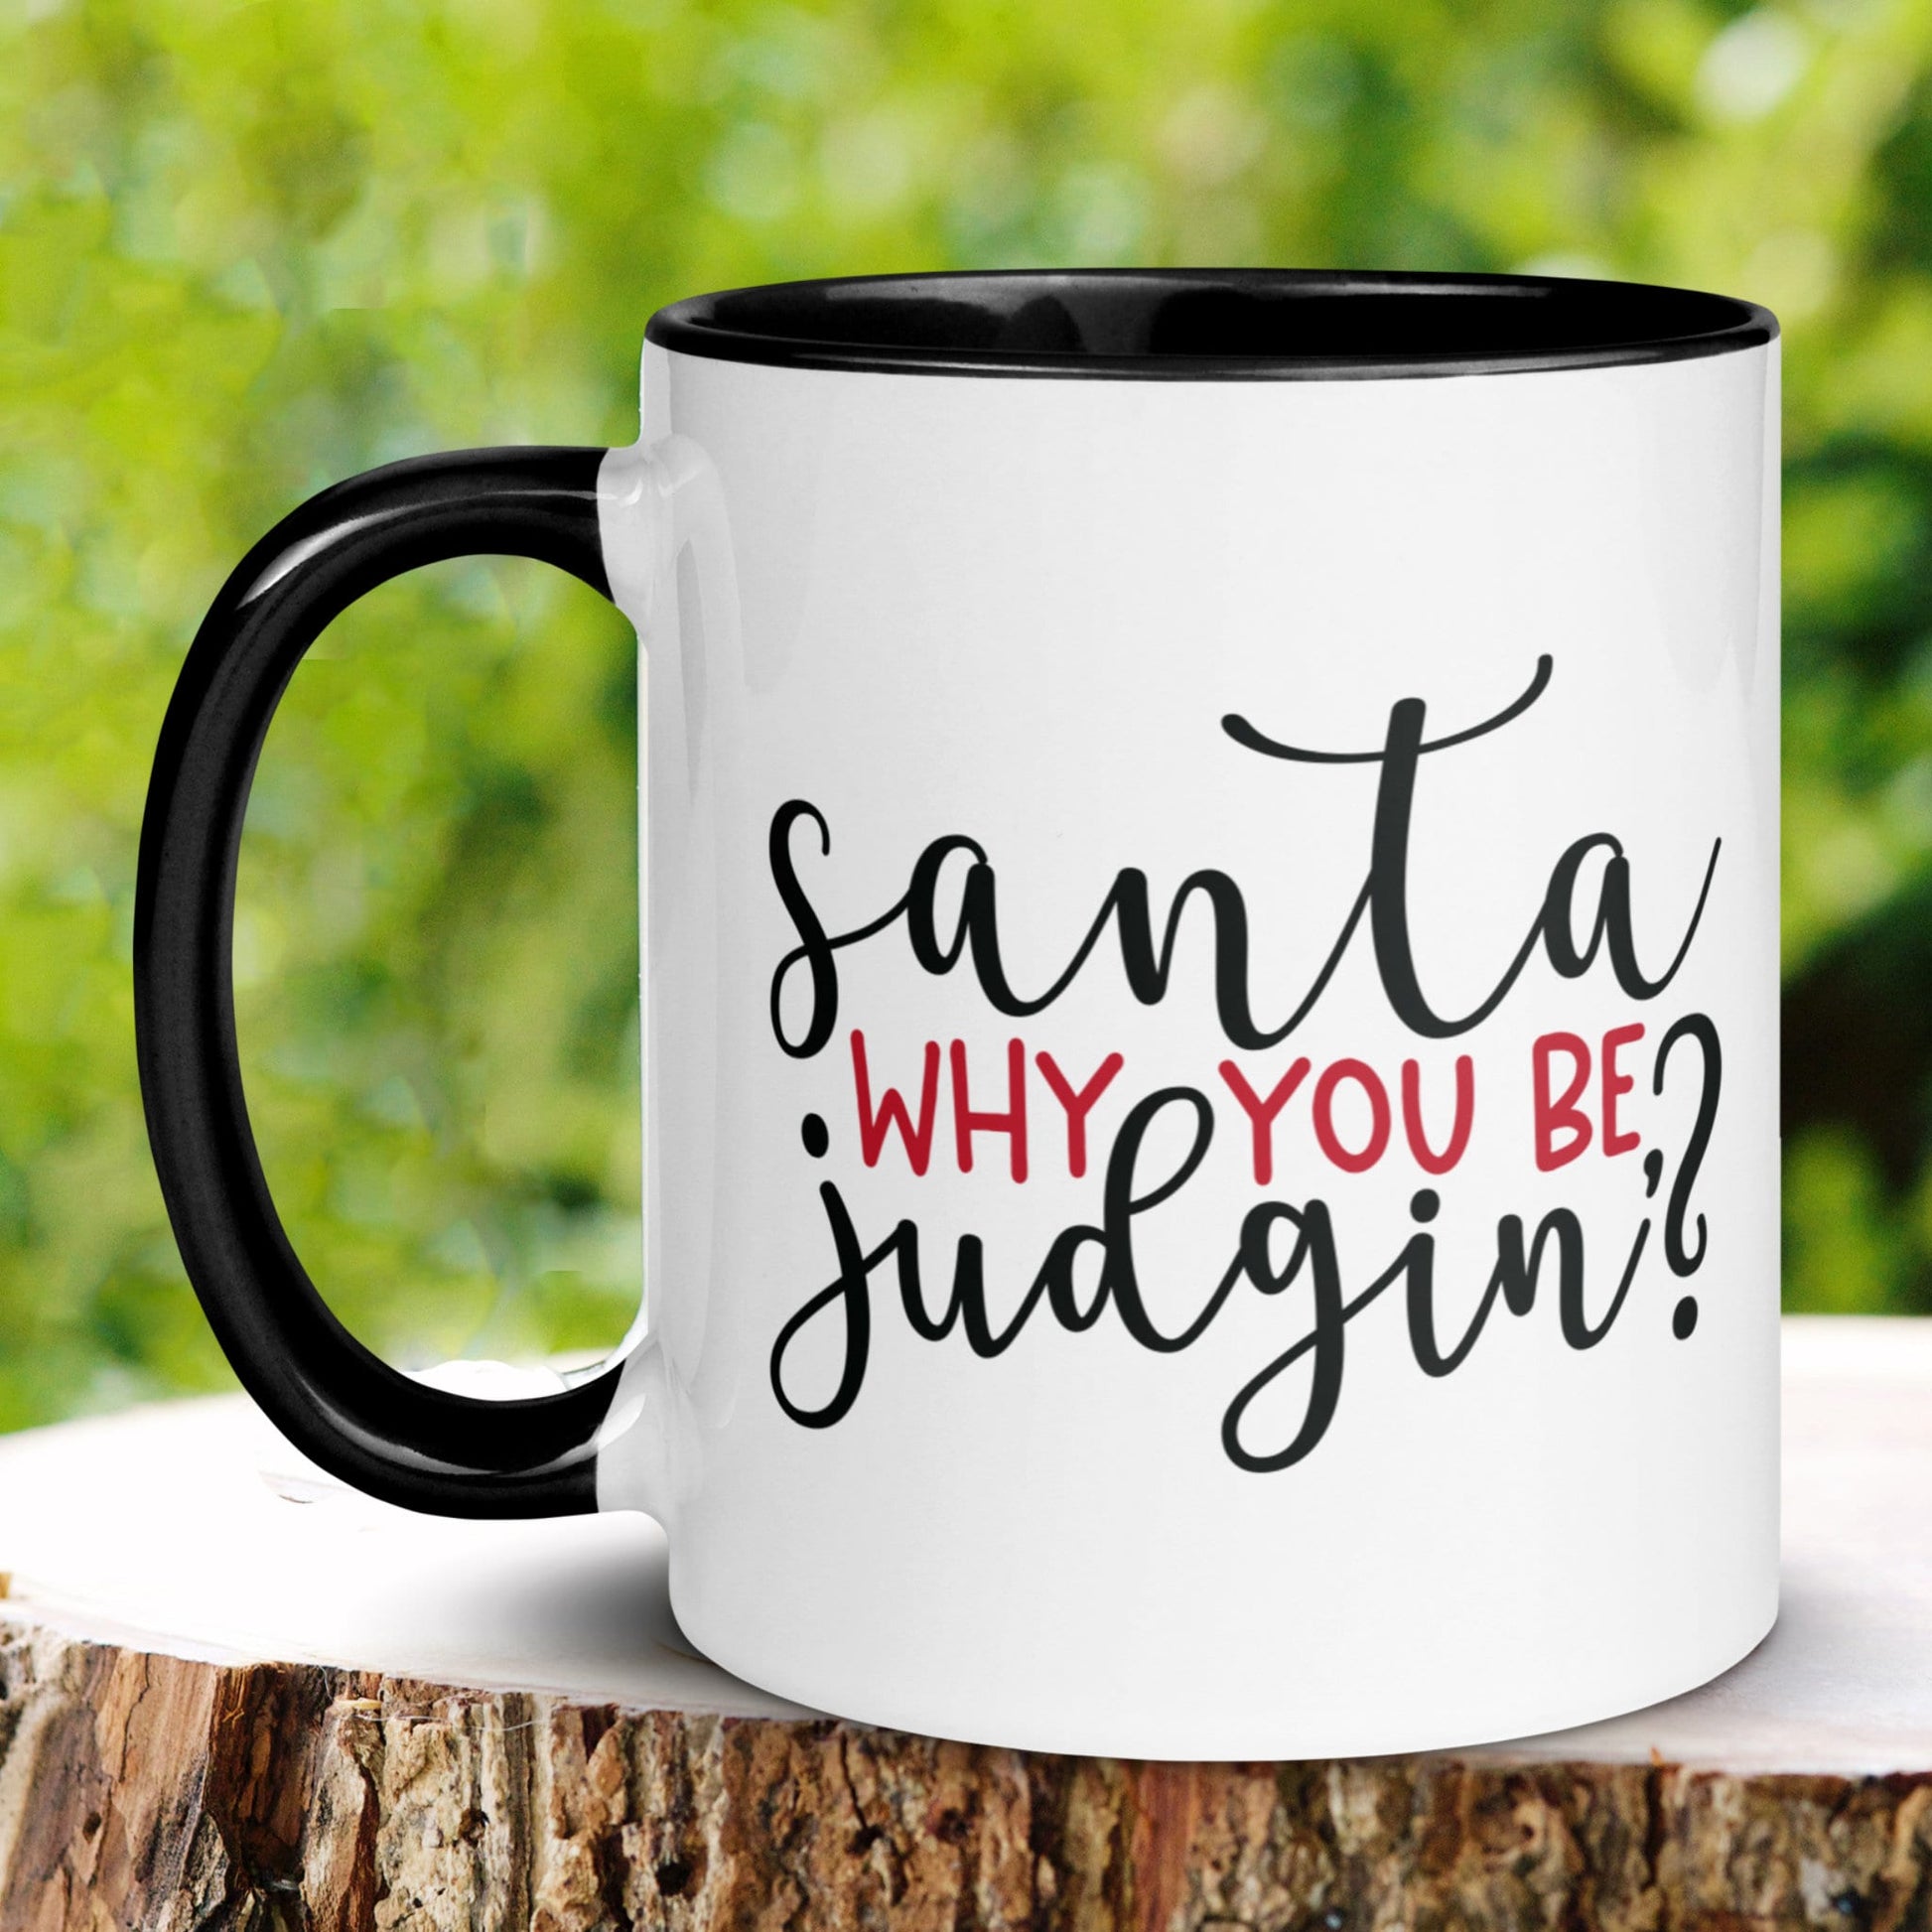 Christmas Gifts, Christmas Mug - Zehnaria - WINTER HOLIDAY - Mugs